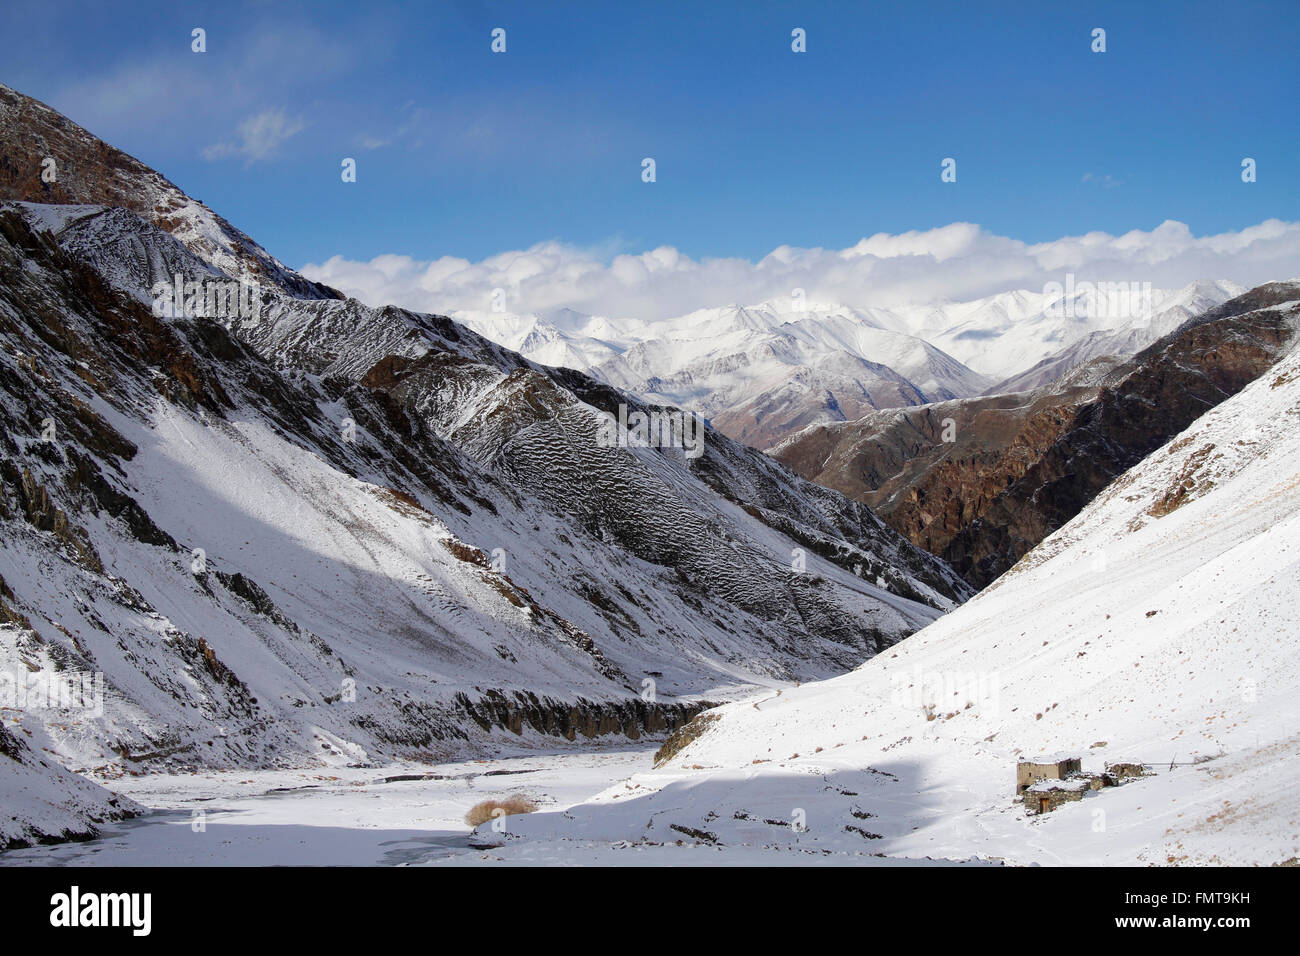 Dans les montagnes de l'himalaya Ladakh, Inde. Haute Altitude Hemis National Park. Banque D'Images